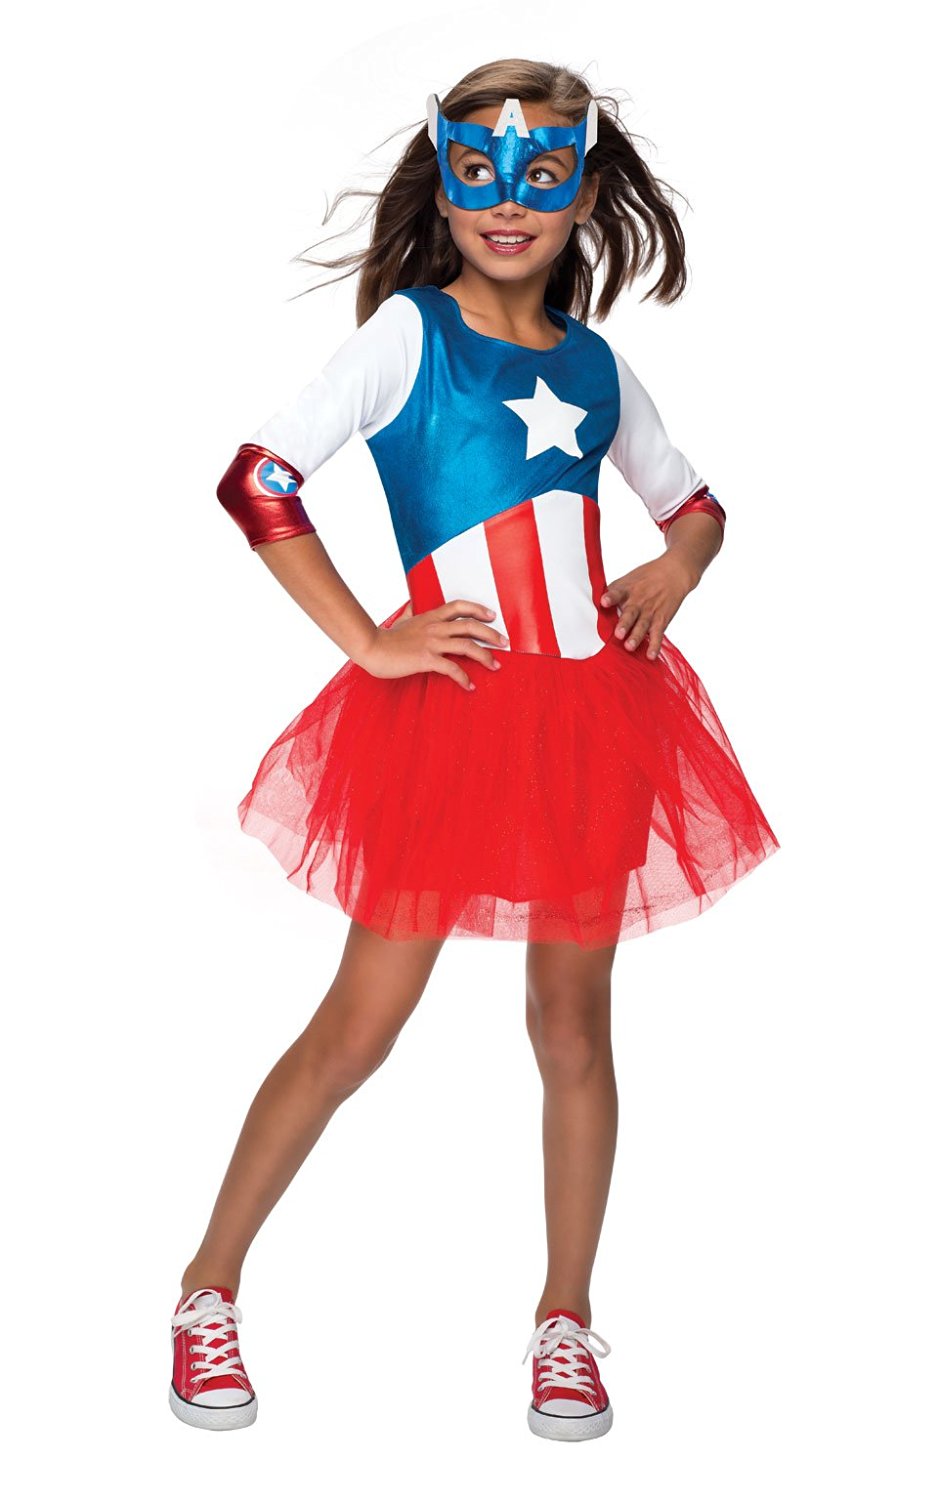 Captain America Costume For Girls - www.kidslovedressup.com